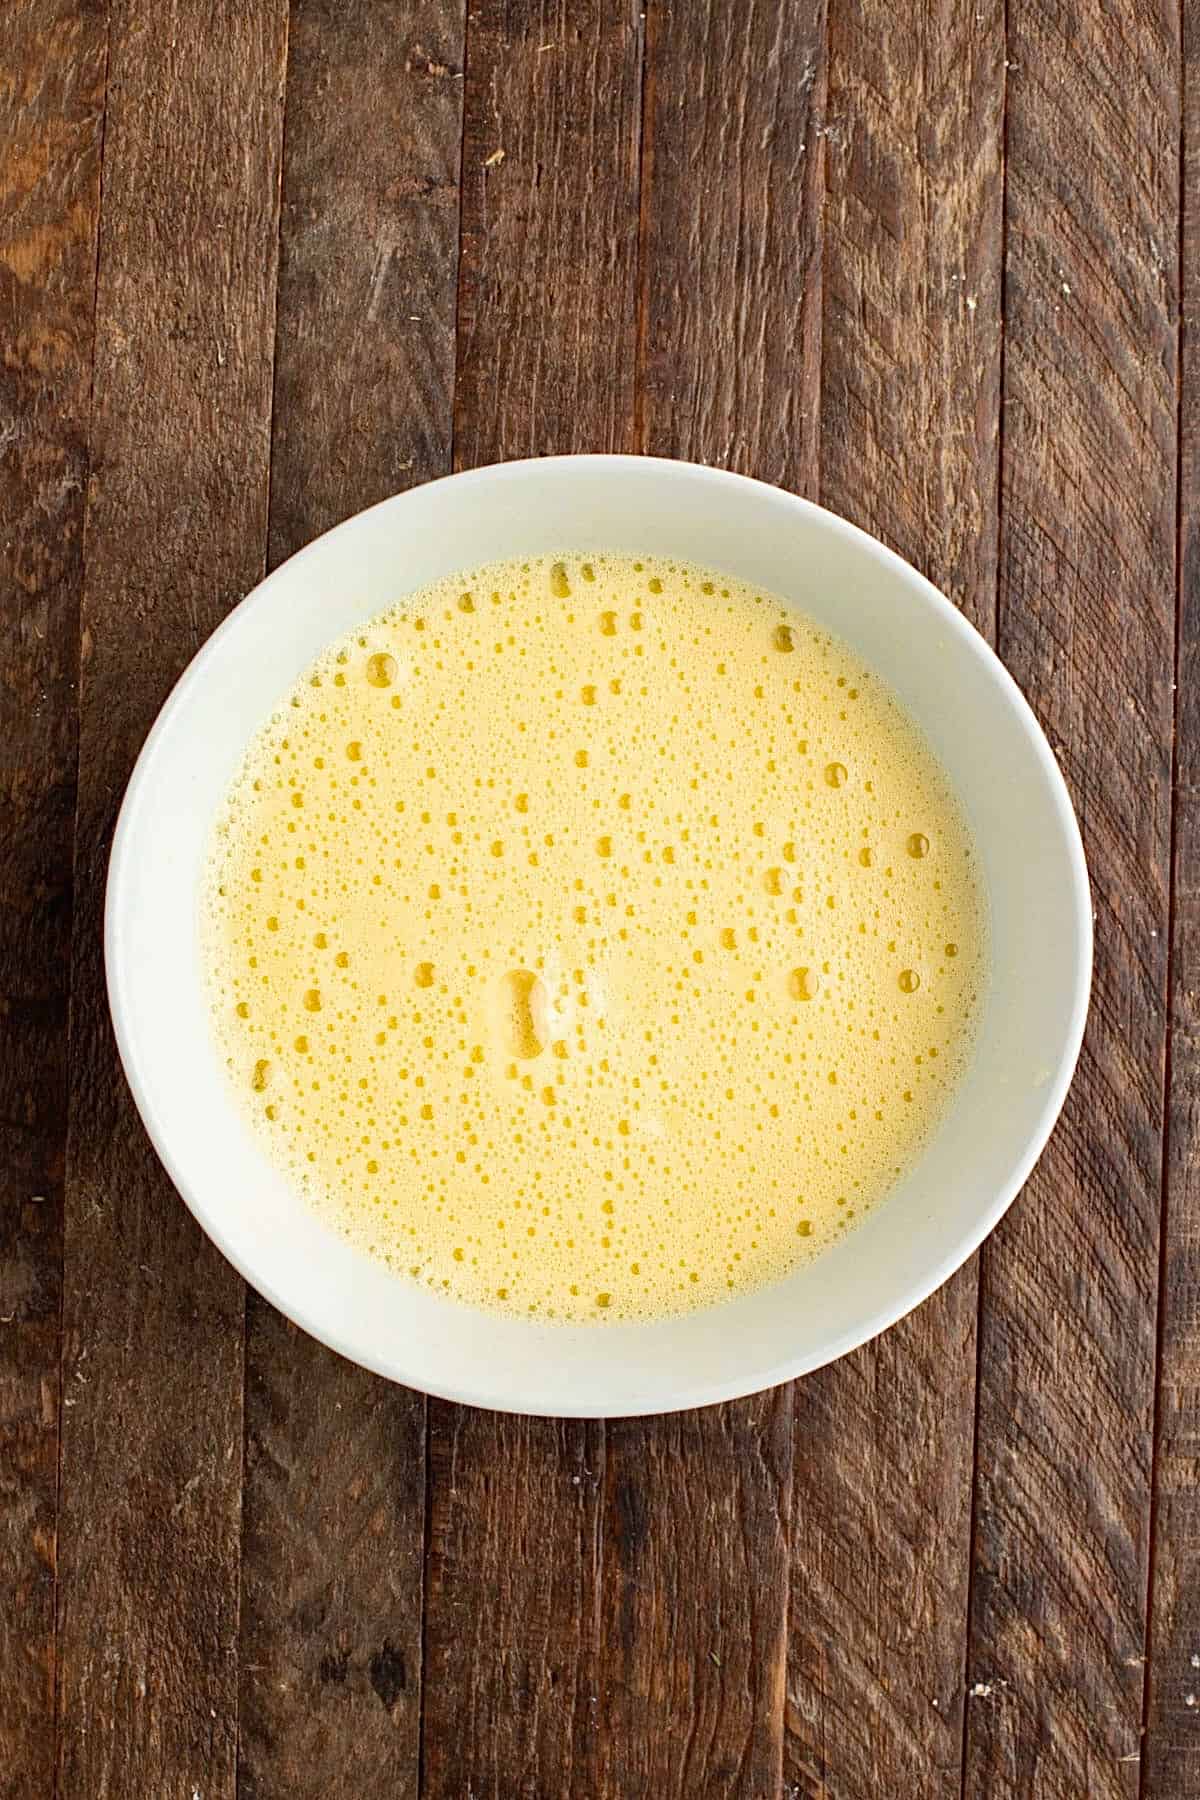 Prepare the Egg Lemon sauce (Avgolemono)